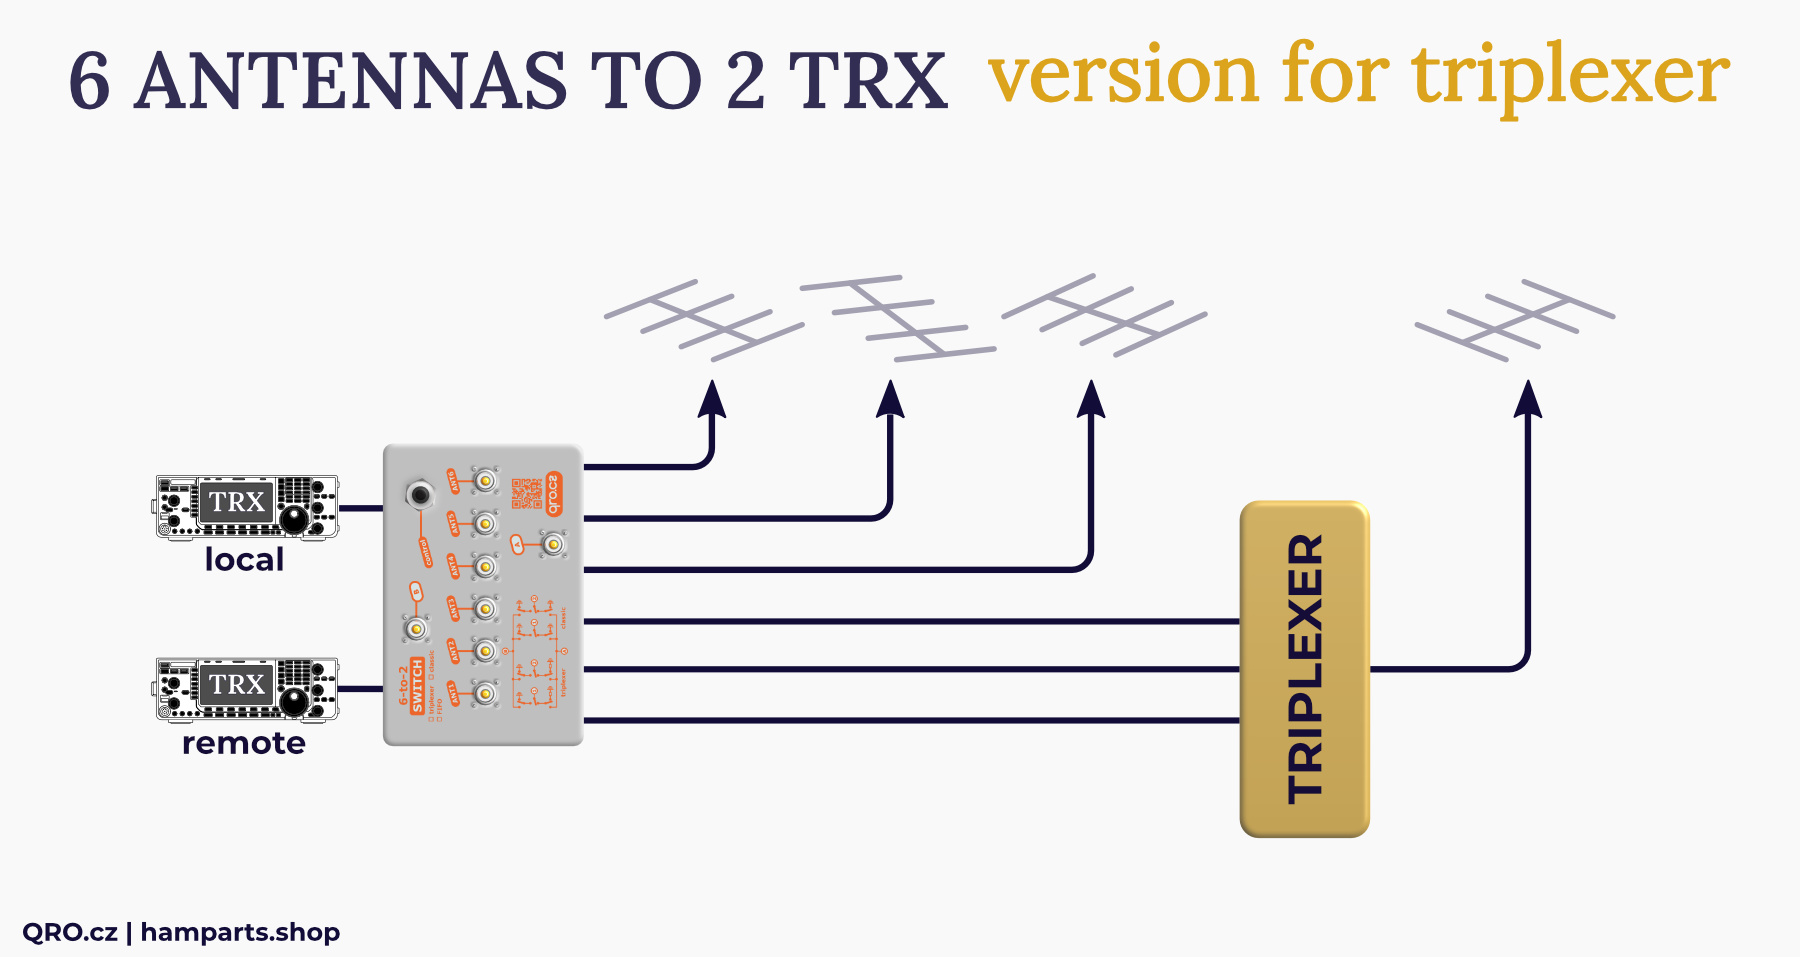 6-2 switch MK2 triplexer version by qro.cz hamparts.shop